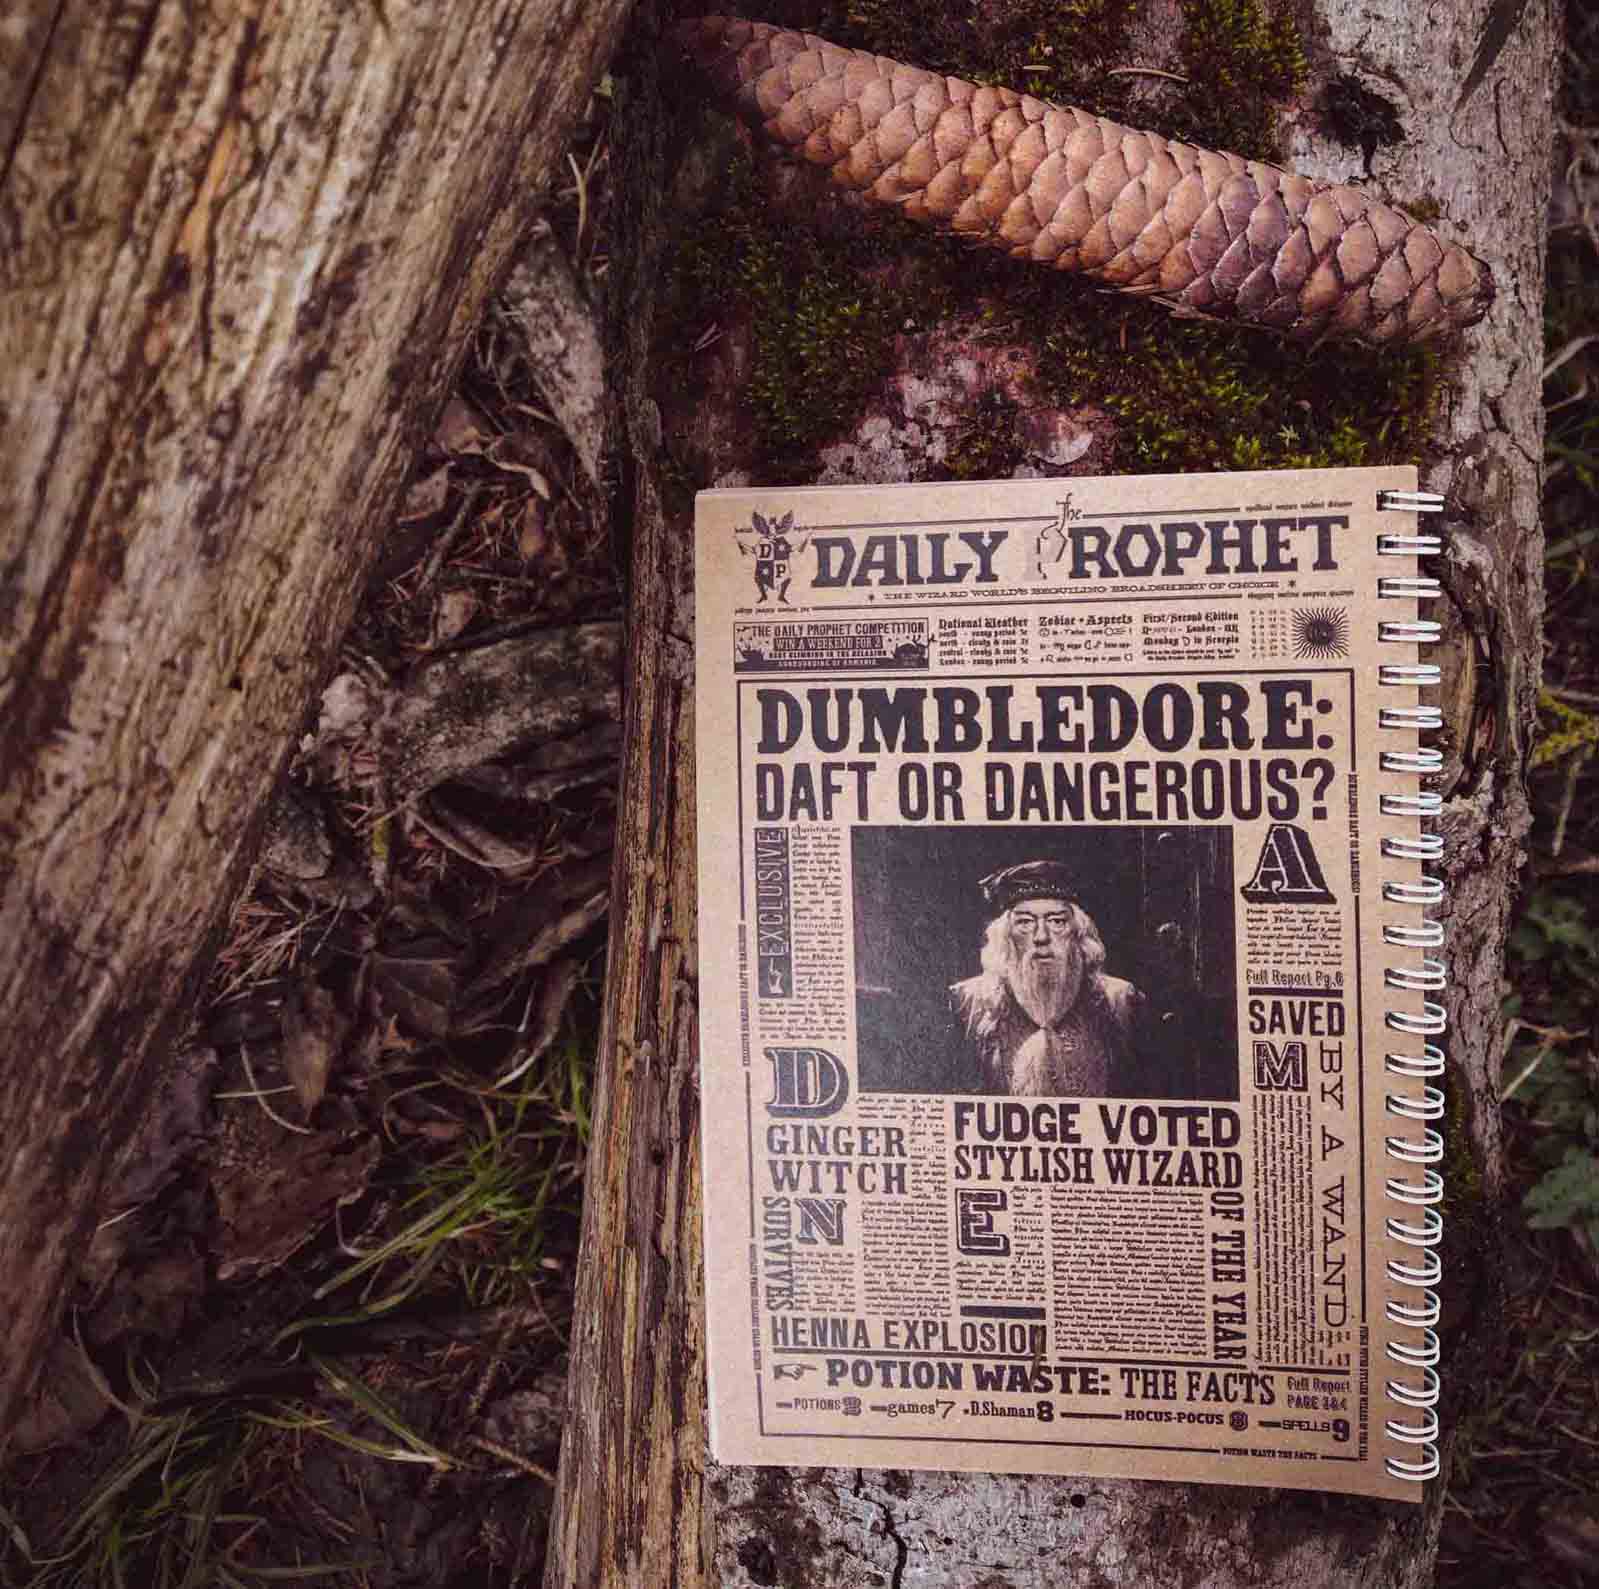 دفتر یادداشت روزنامه دیلی پرافت با تیتر دامبلدور در جنگل